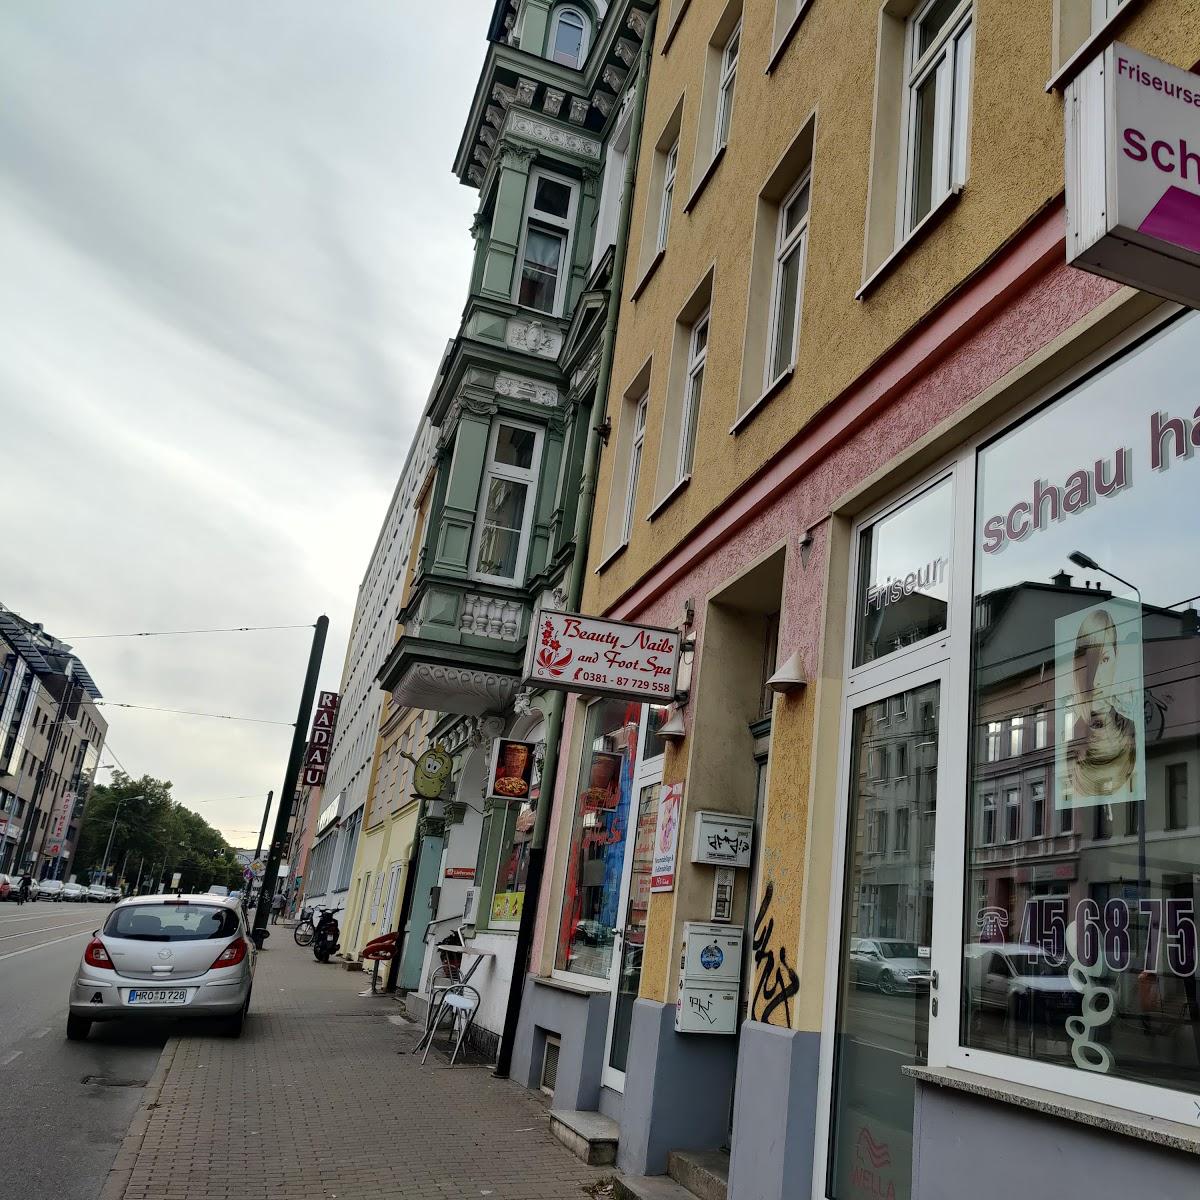 Restaurant "Das Kumpirhaus" in Rostock